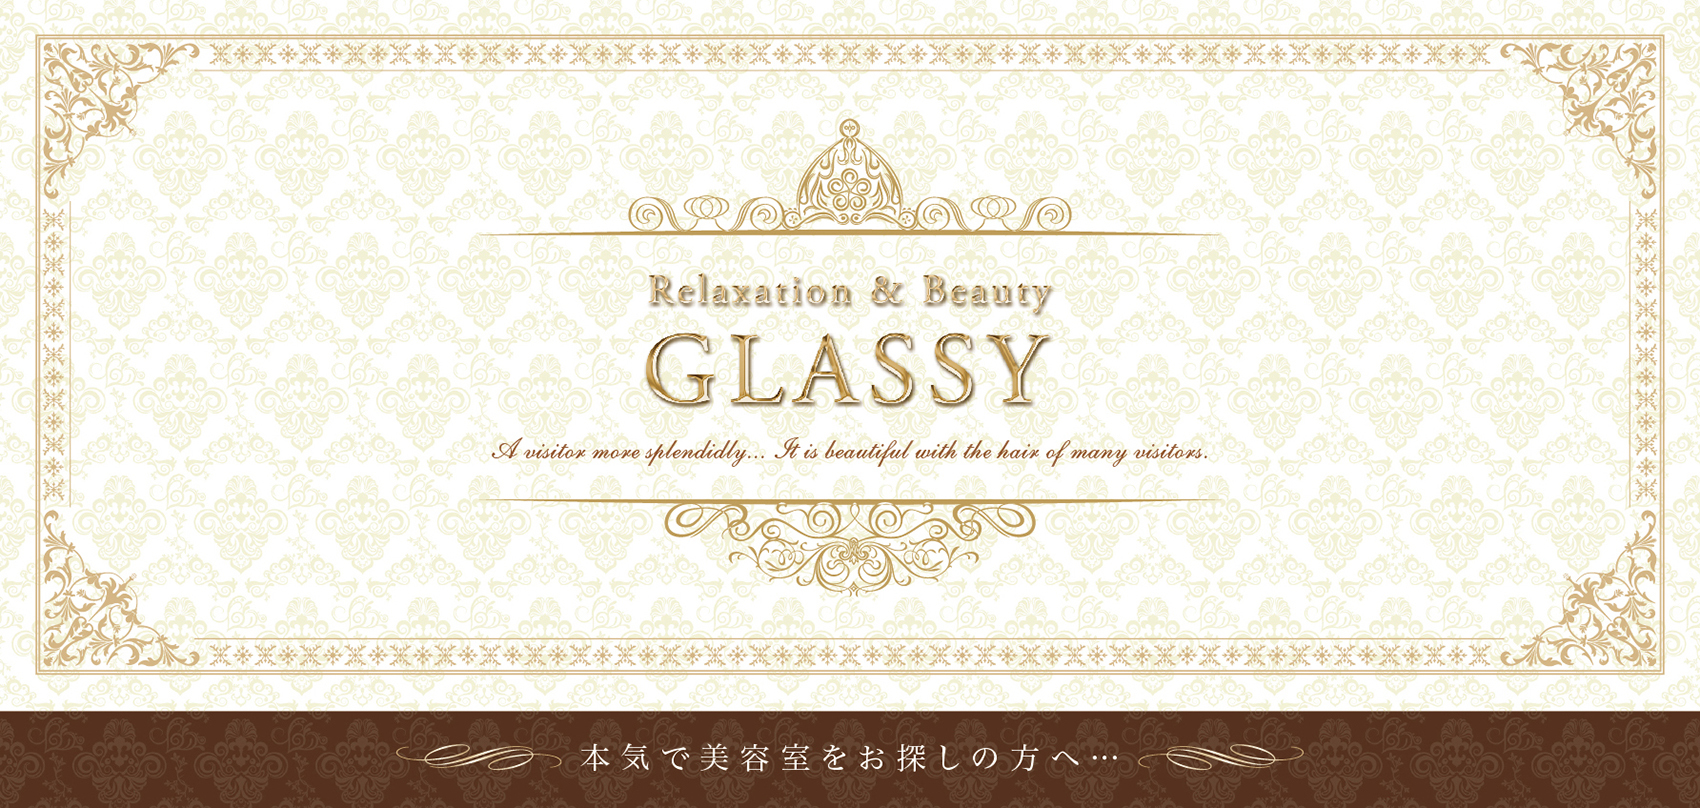 美容室『GLASSY』様のリーフレット（折りパンフレット）画像